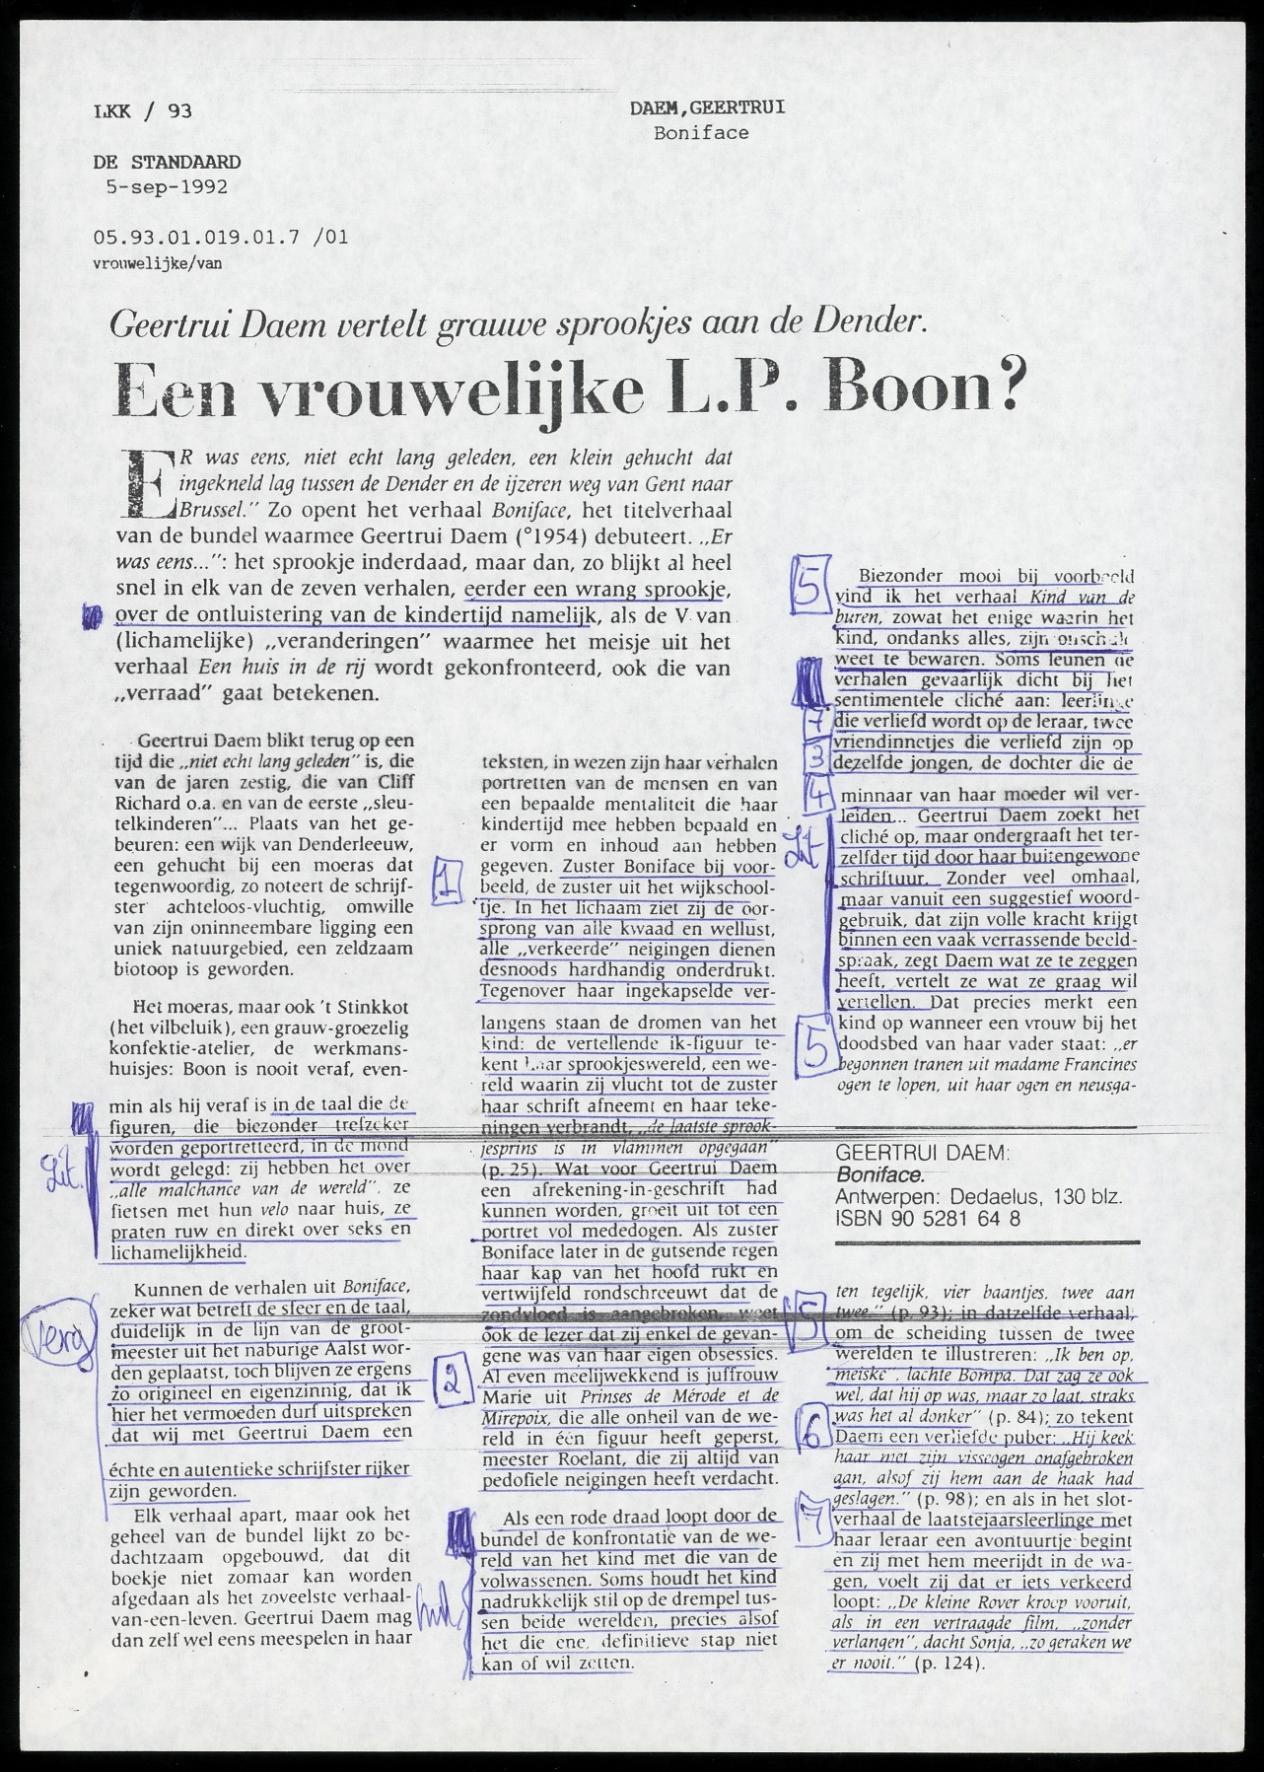 artikel 'De Standaard', 05.09.1992